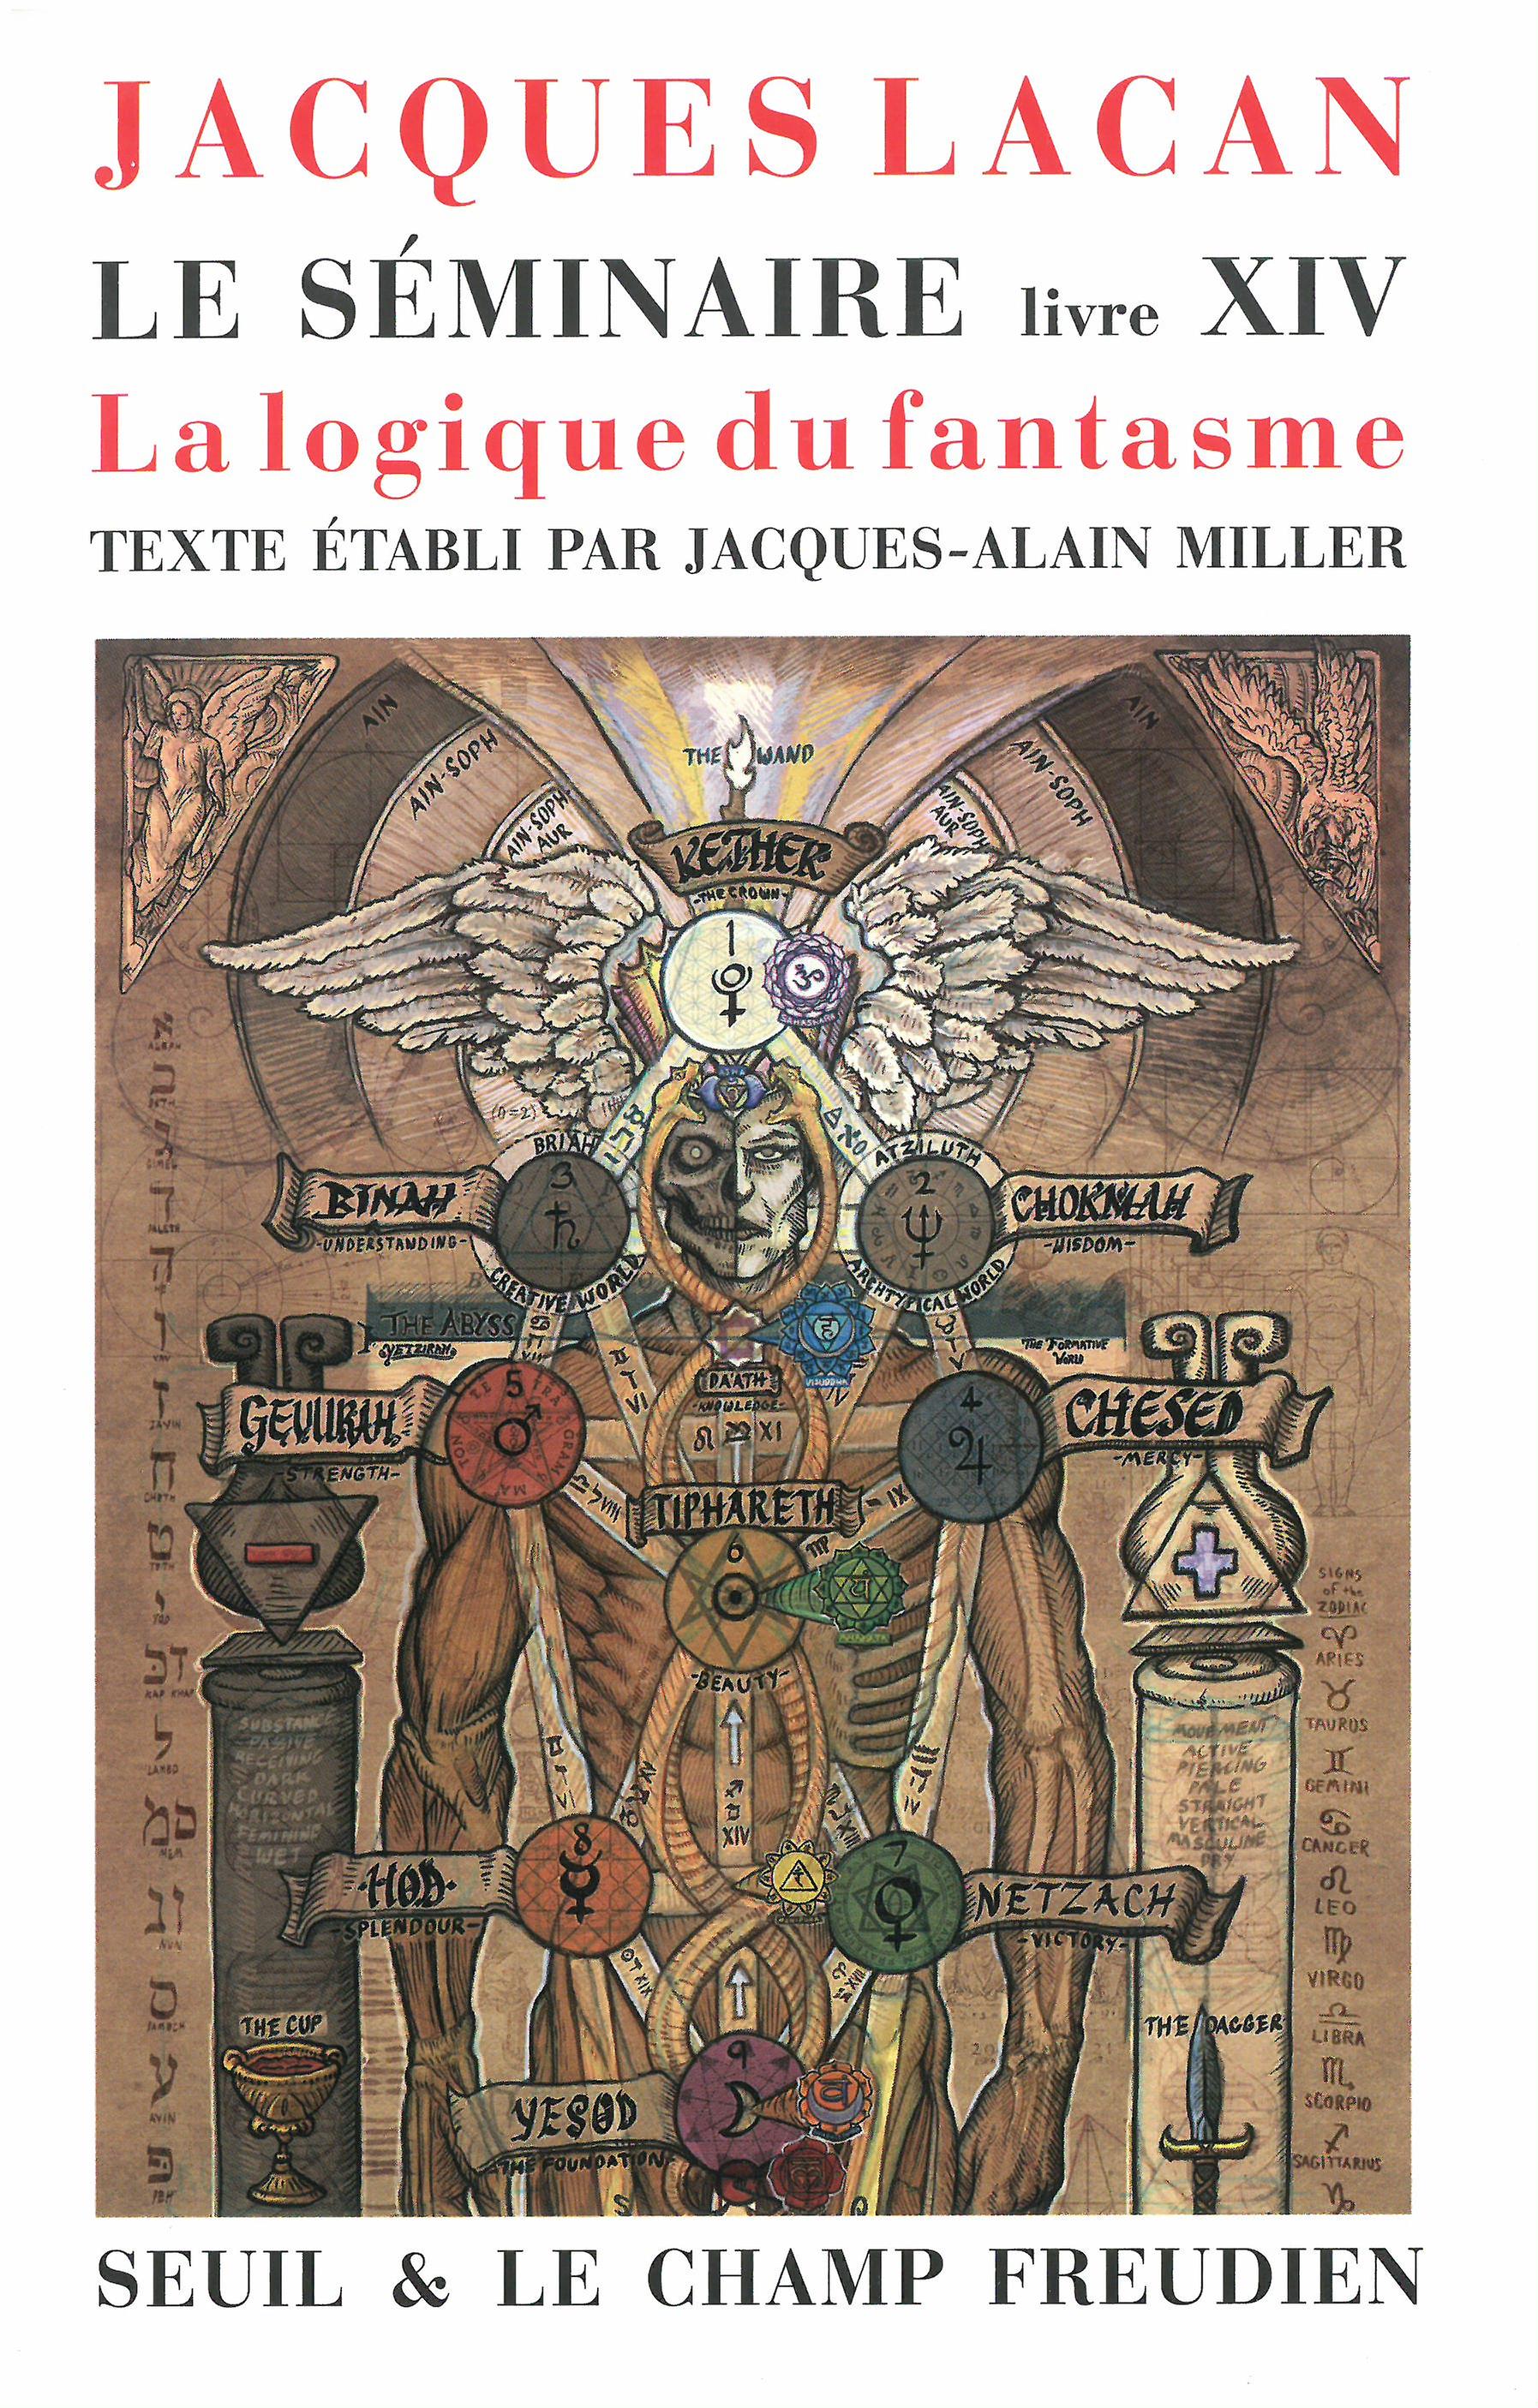 Jacques Lacan-Le séminaire livreXIV-La logique du fantasme.jpg